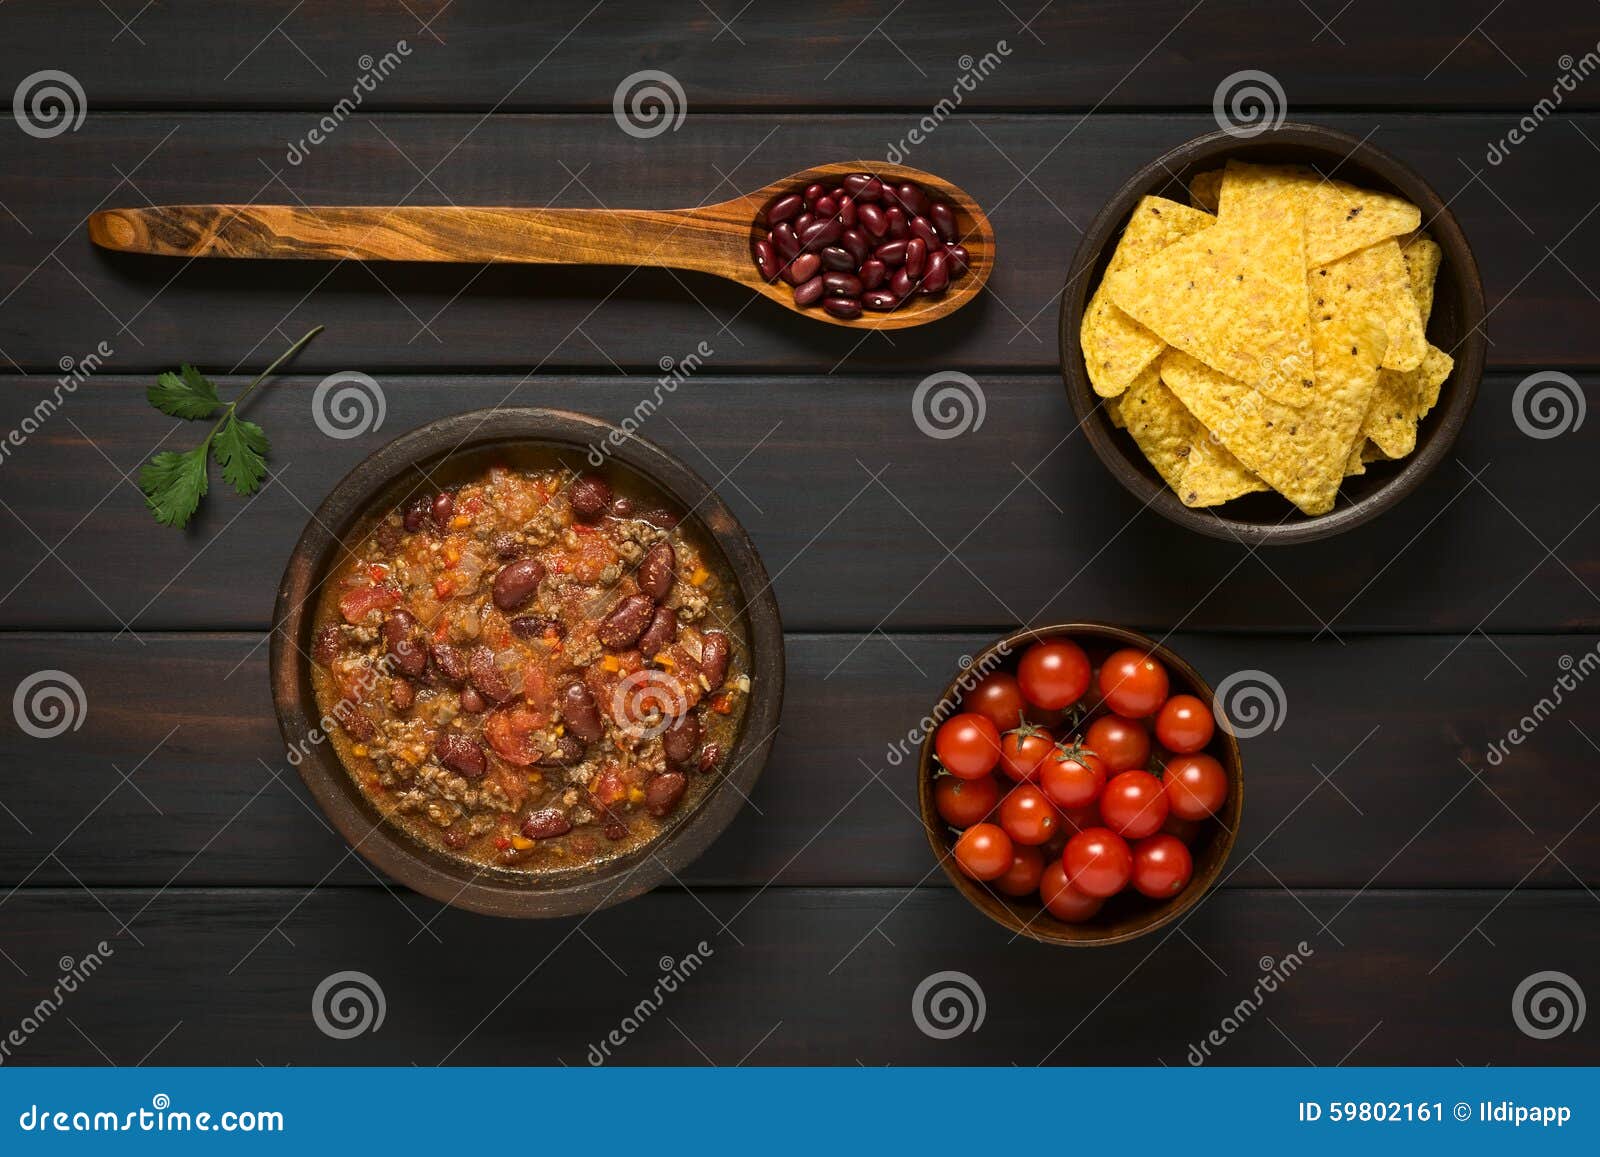 Chili Con Carne Mit Tortillachips Stockbild - Bild von chip, nahrung ...